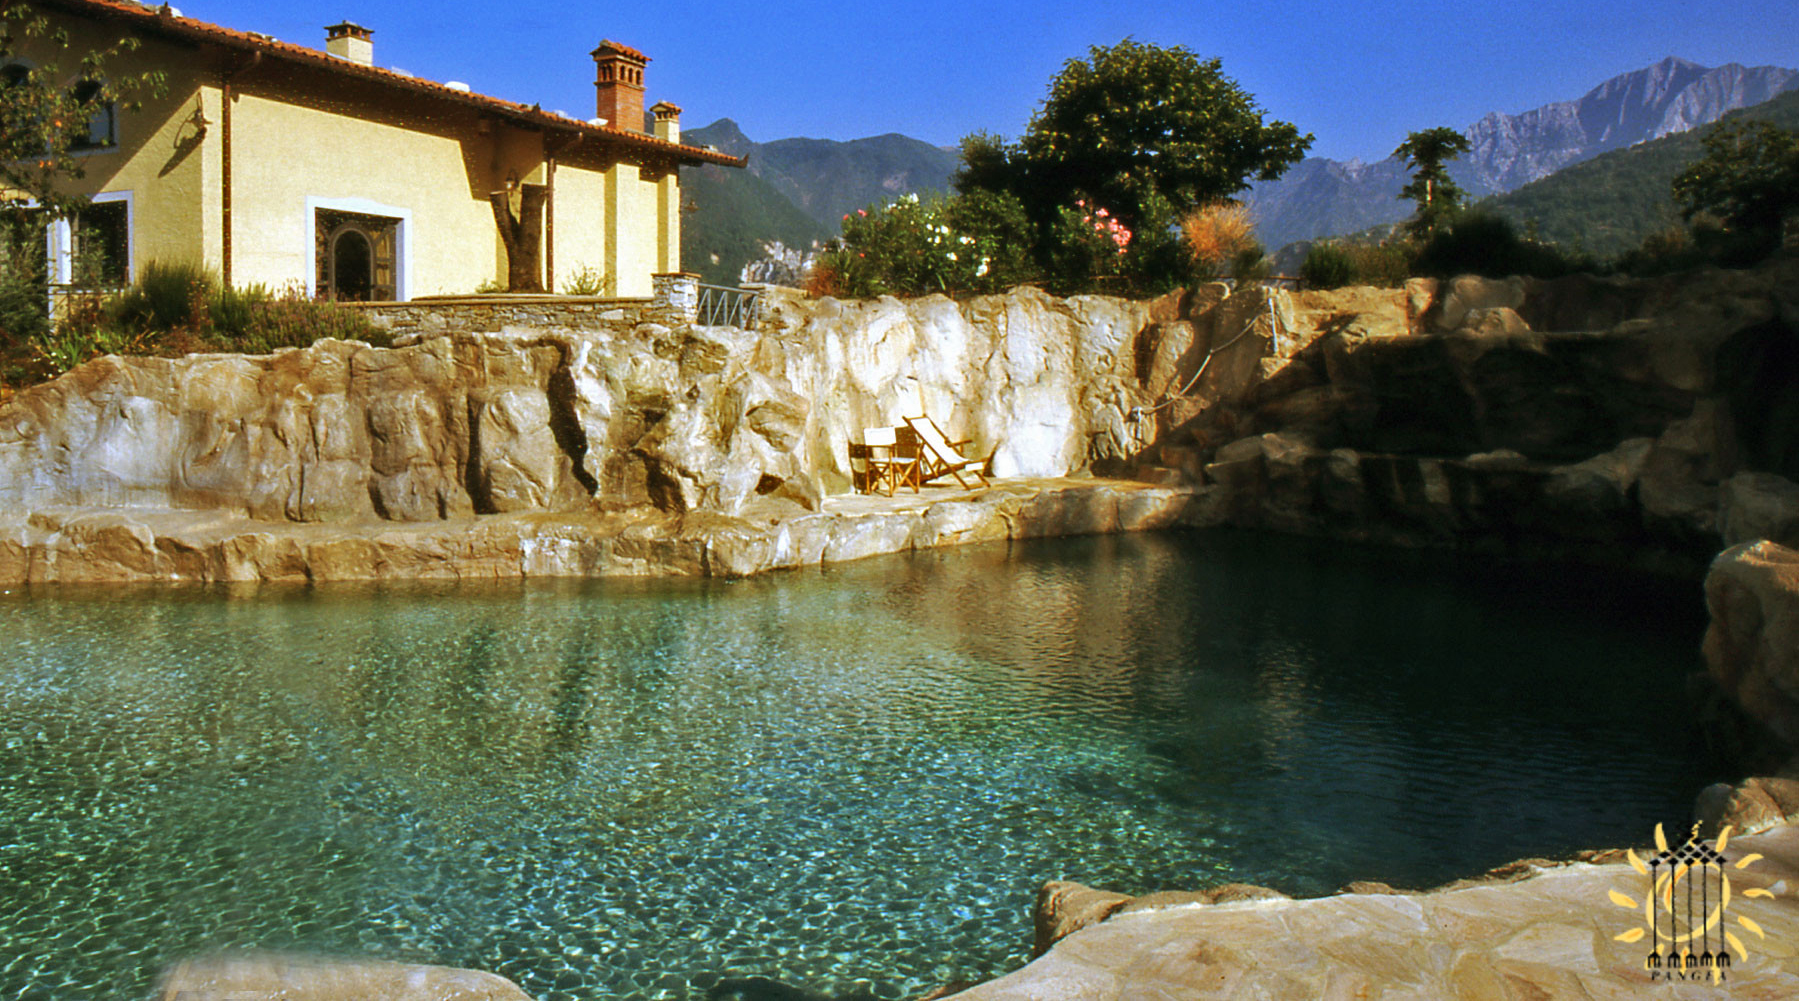 Una piscina in Toscana costruita con la pietra locale e riciclando l'acqua raccolta dalla copertura, tramite le grondaie